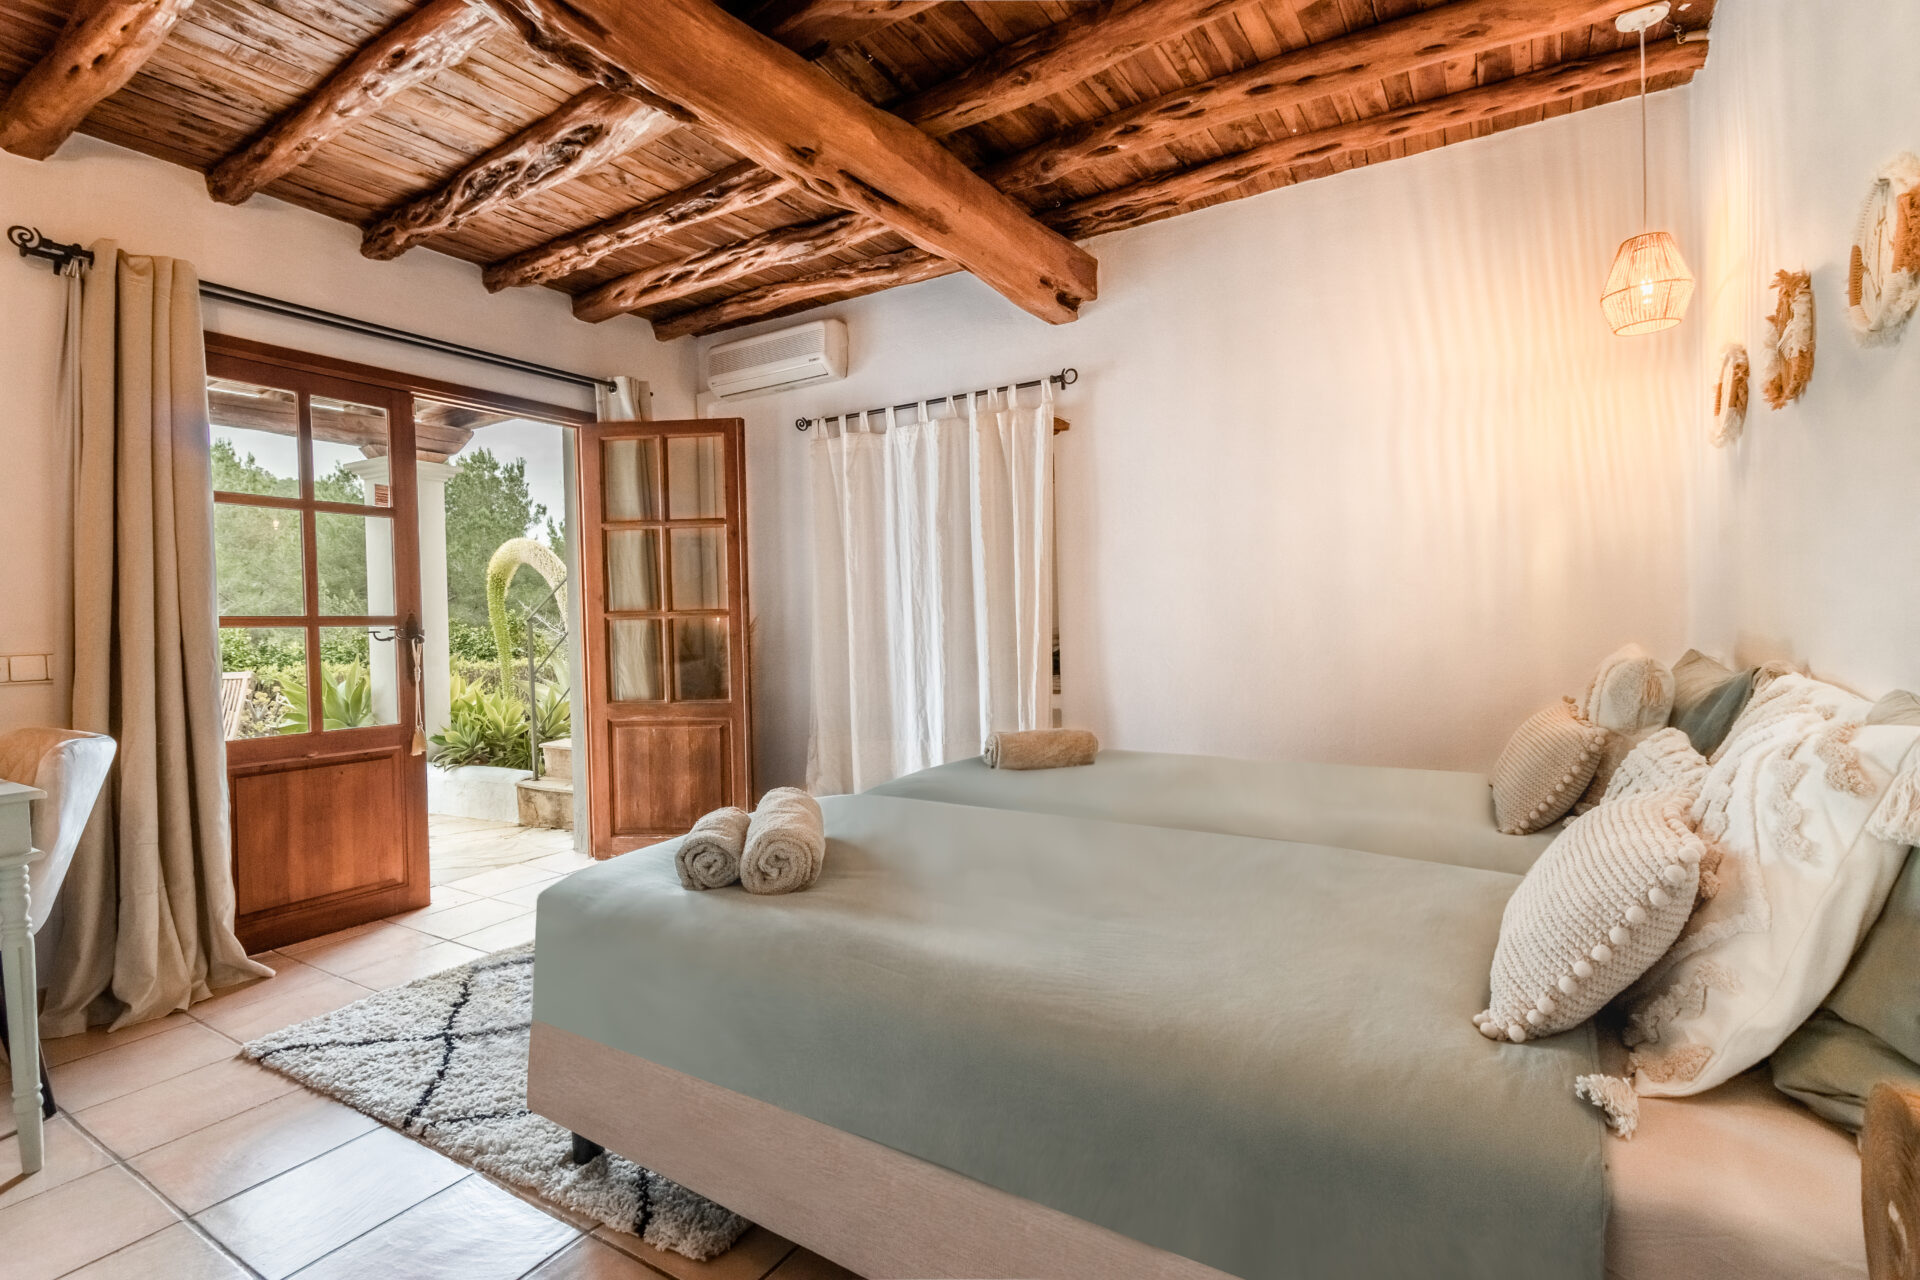 Huis Lauri Lauri manifesteerde haar eigen retreat locatie op Ibiza